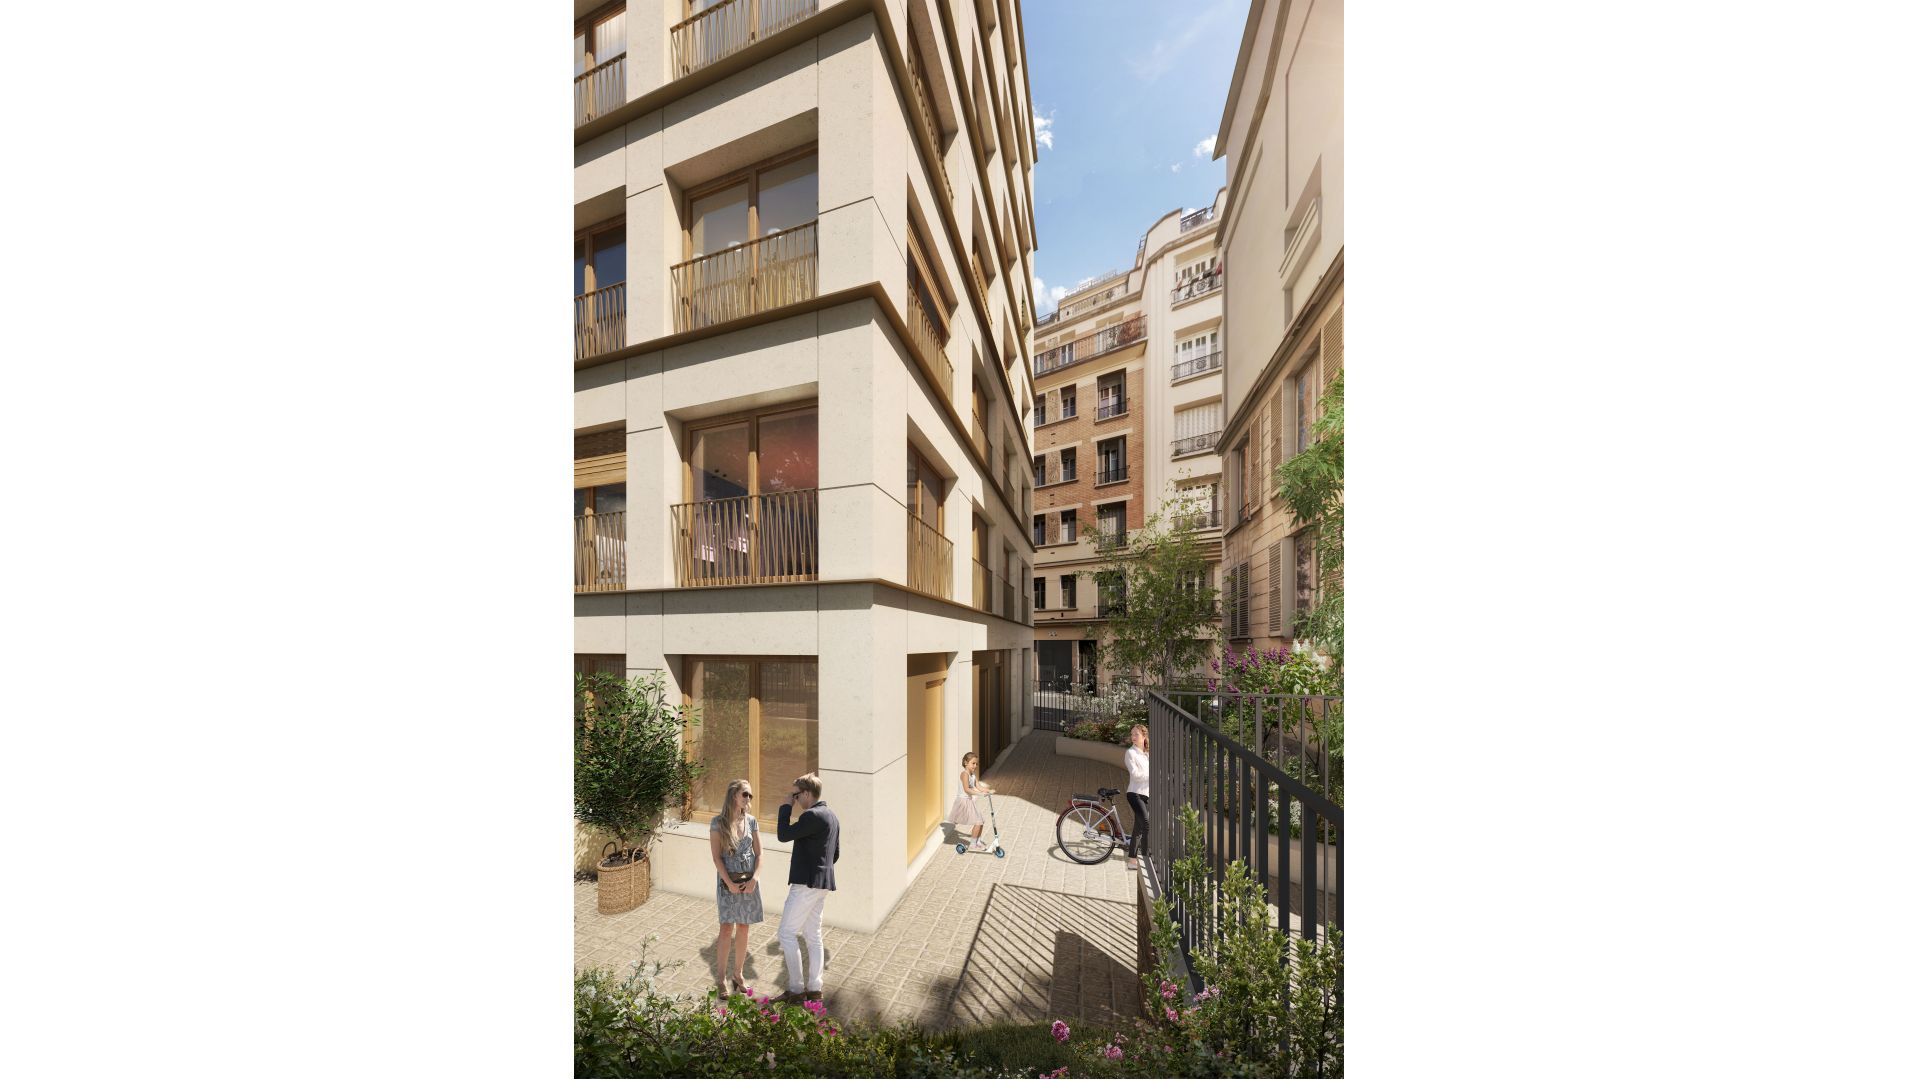 Greencity immobilier - achat appartements neufs du T1Bis  au T5 - Résidence Passage Saint-Mandé - Paris 12